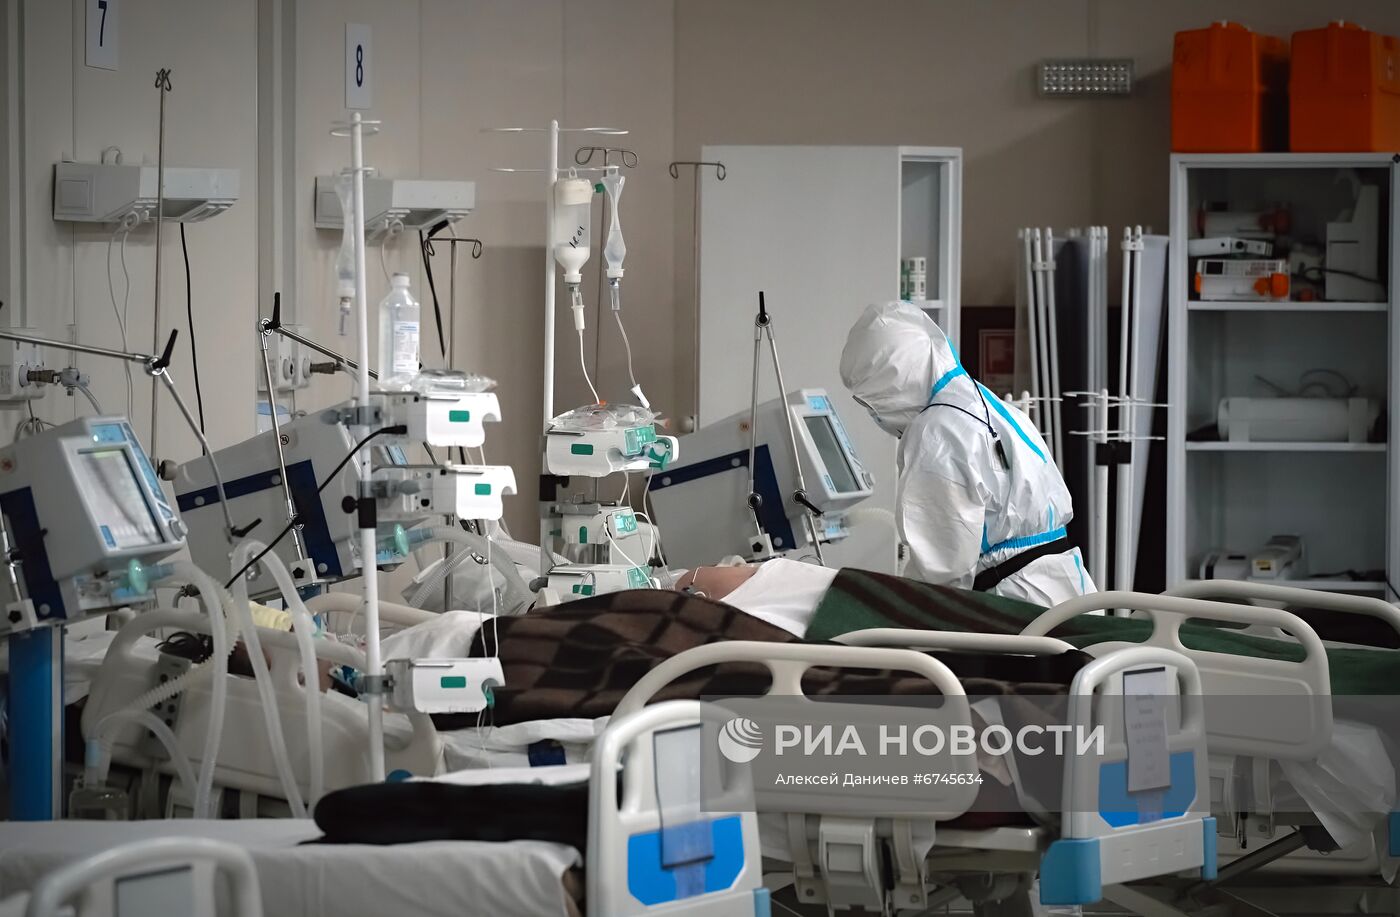 Госпиталь "Ленэкспо" для пациентов с Covid-19 в Санкт-Петербурге